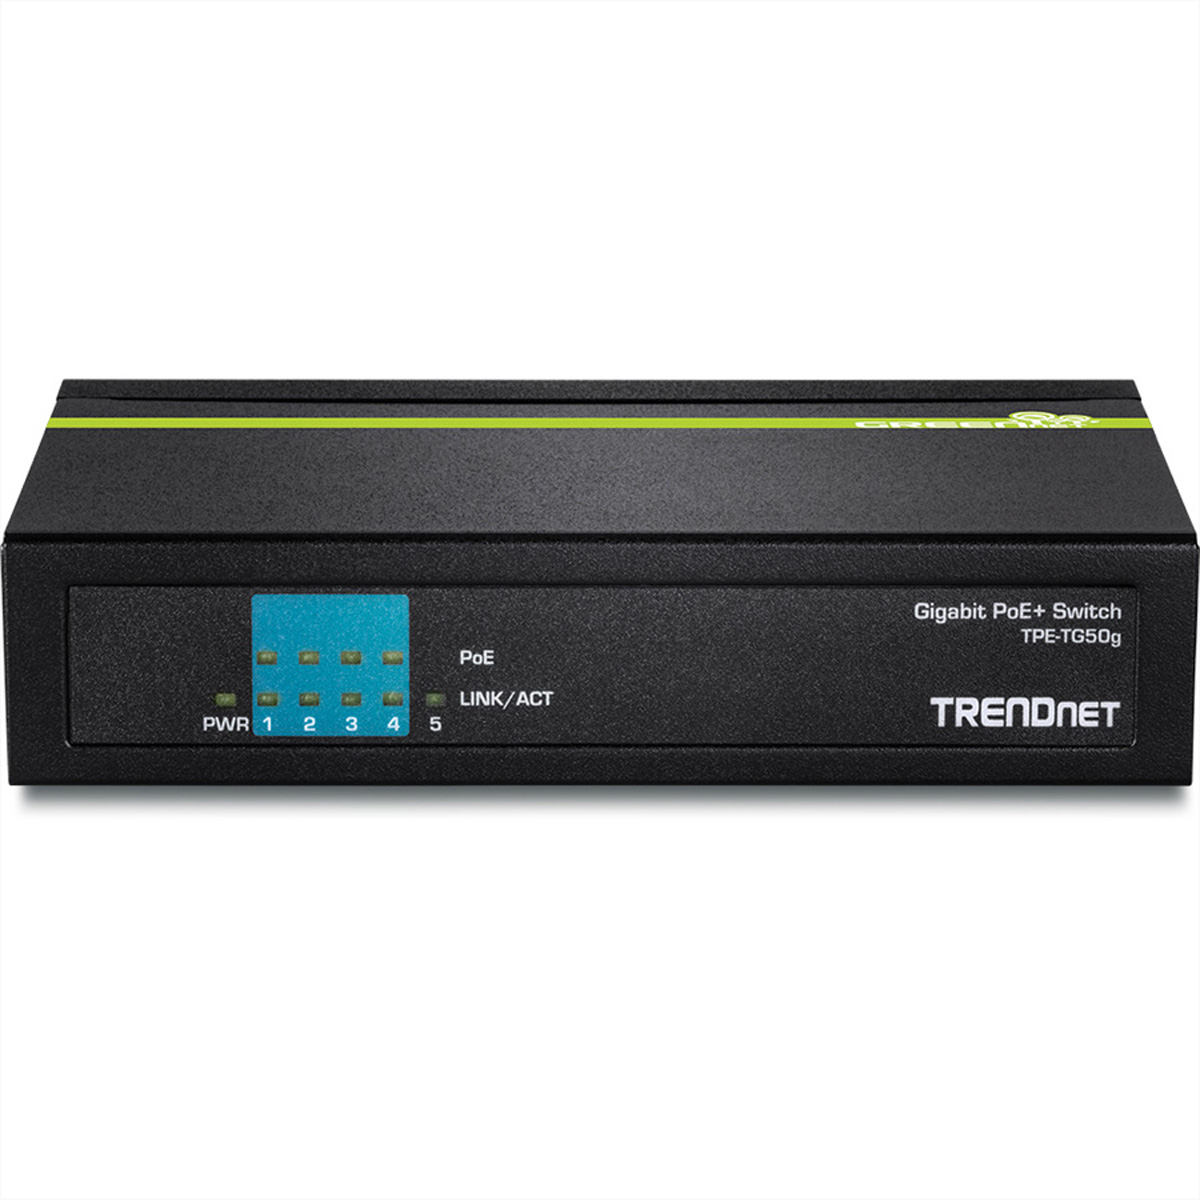 5-Port Gigabit Switch TRENDNET TPE-TG50g PoE+ Switch Gigabit Ethernet